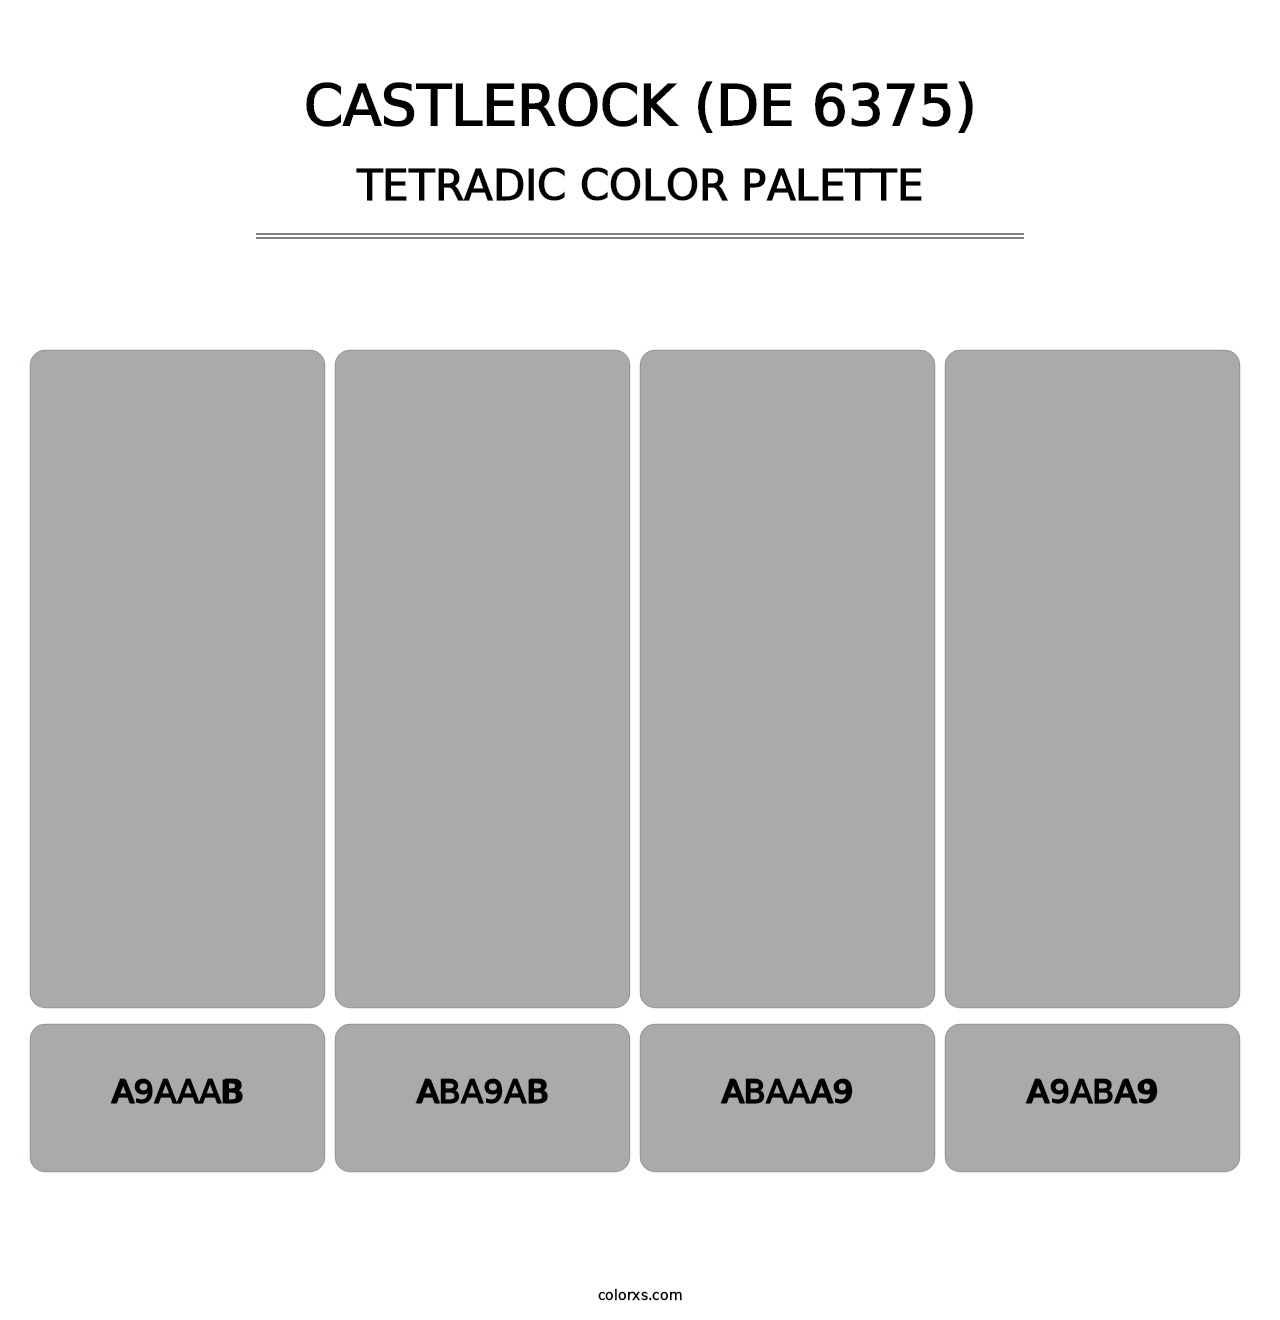 Castlerock (DE 6375) - Tetradic Color Palette